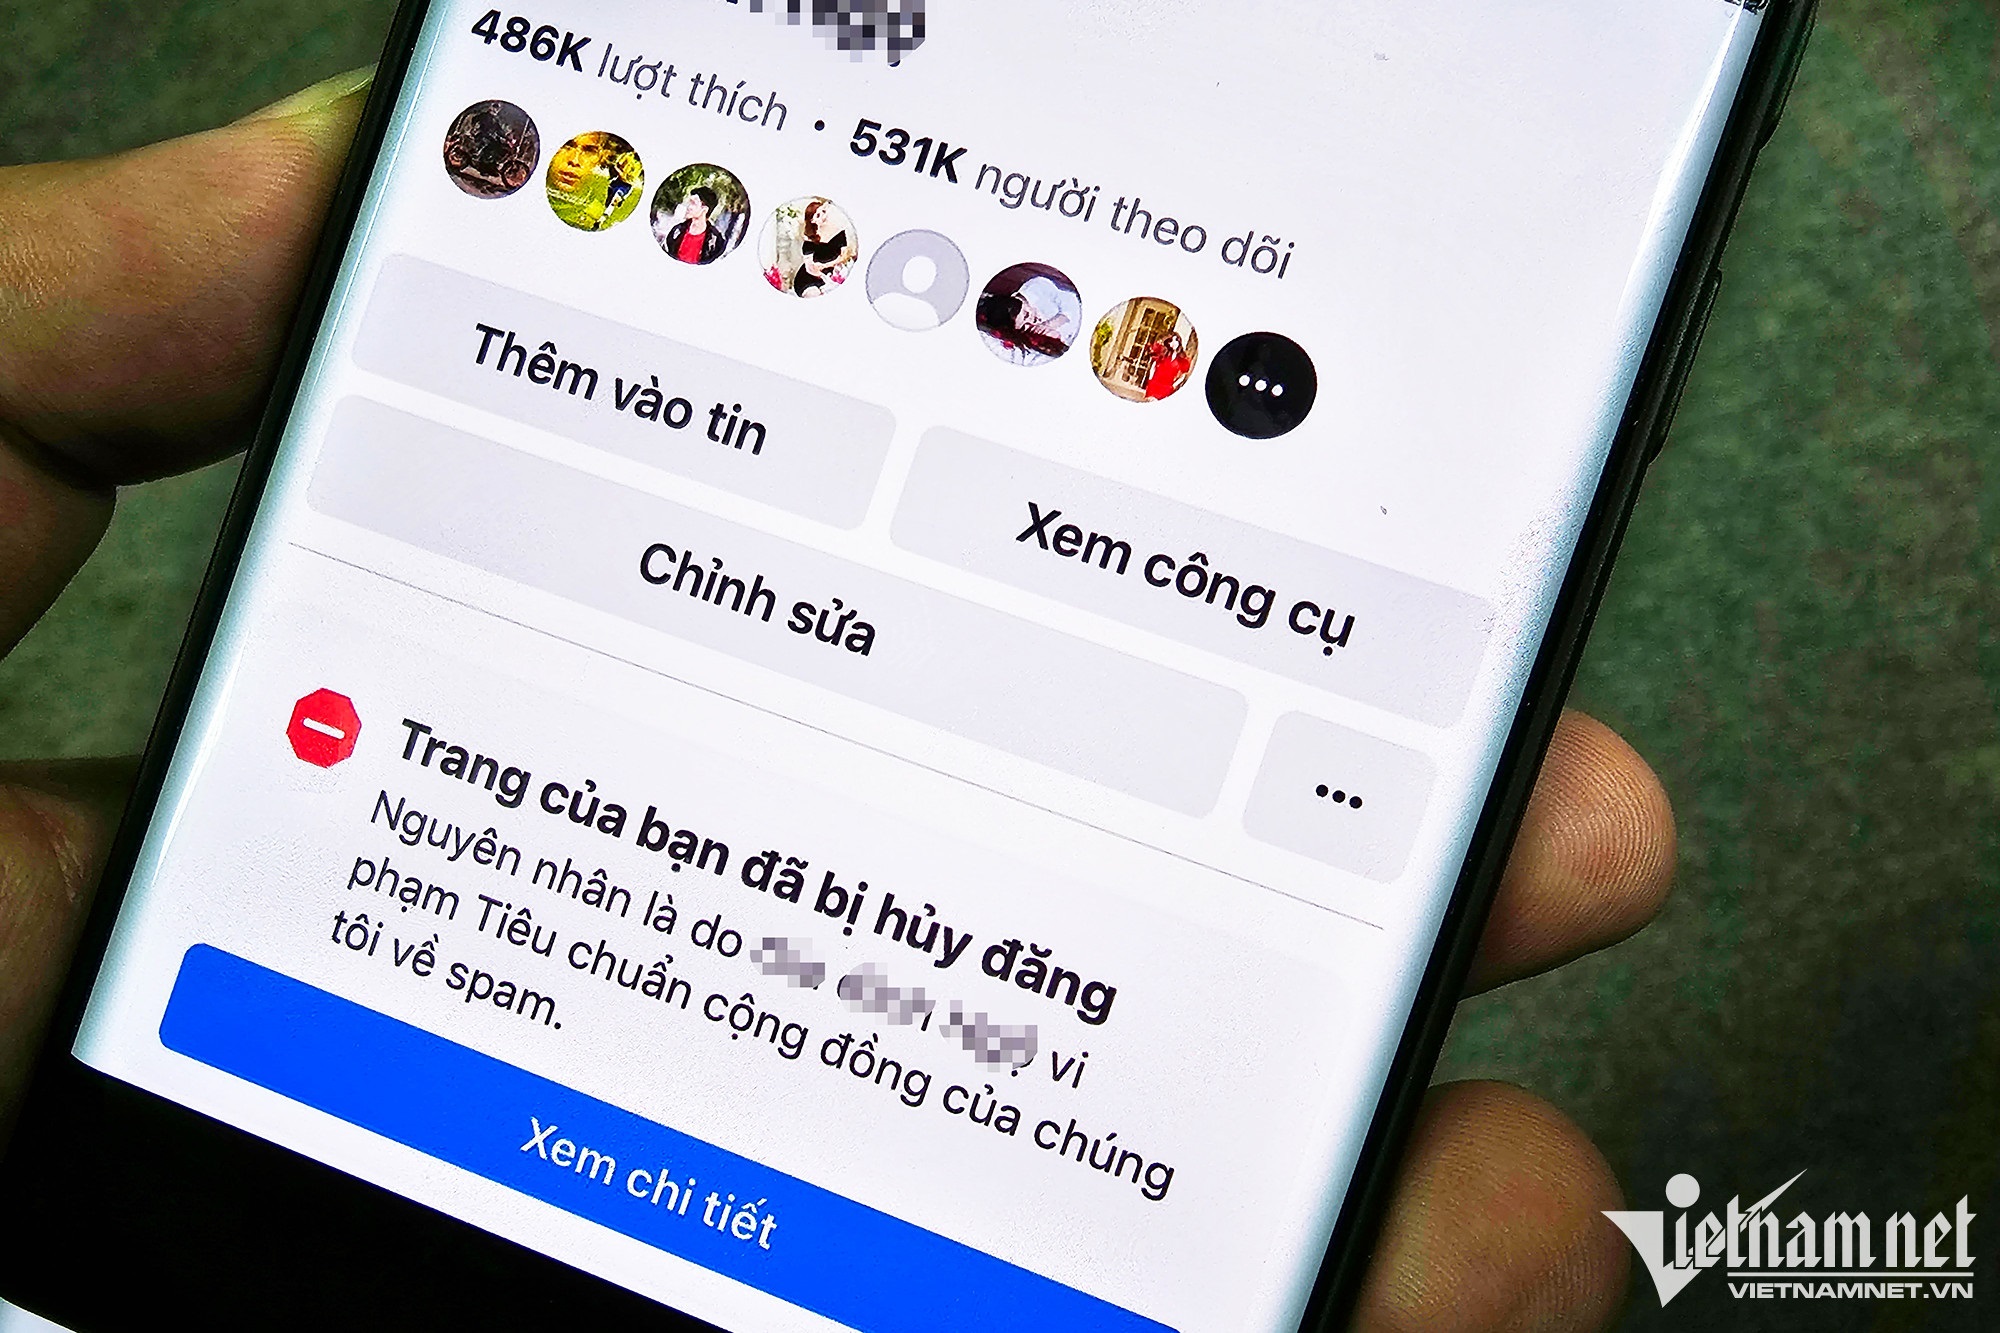 Loạt fanpage Facebook lớn nhỏ tại Việt Nam bất ngờ bị khóa, tước quyền đăng bài - Ảnh 1